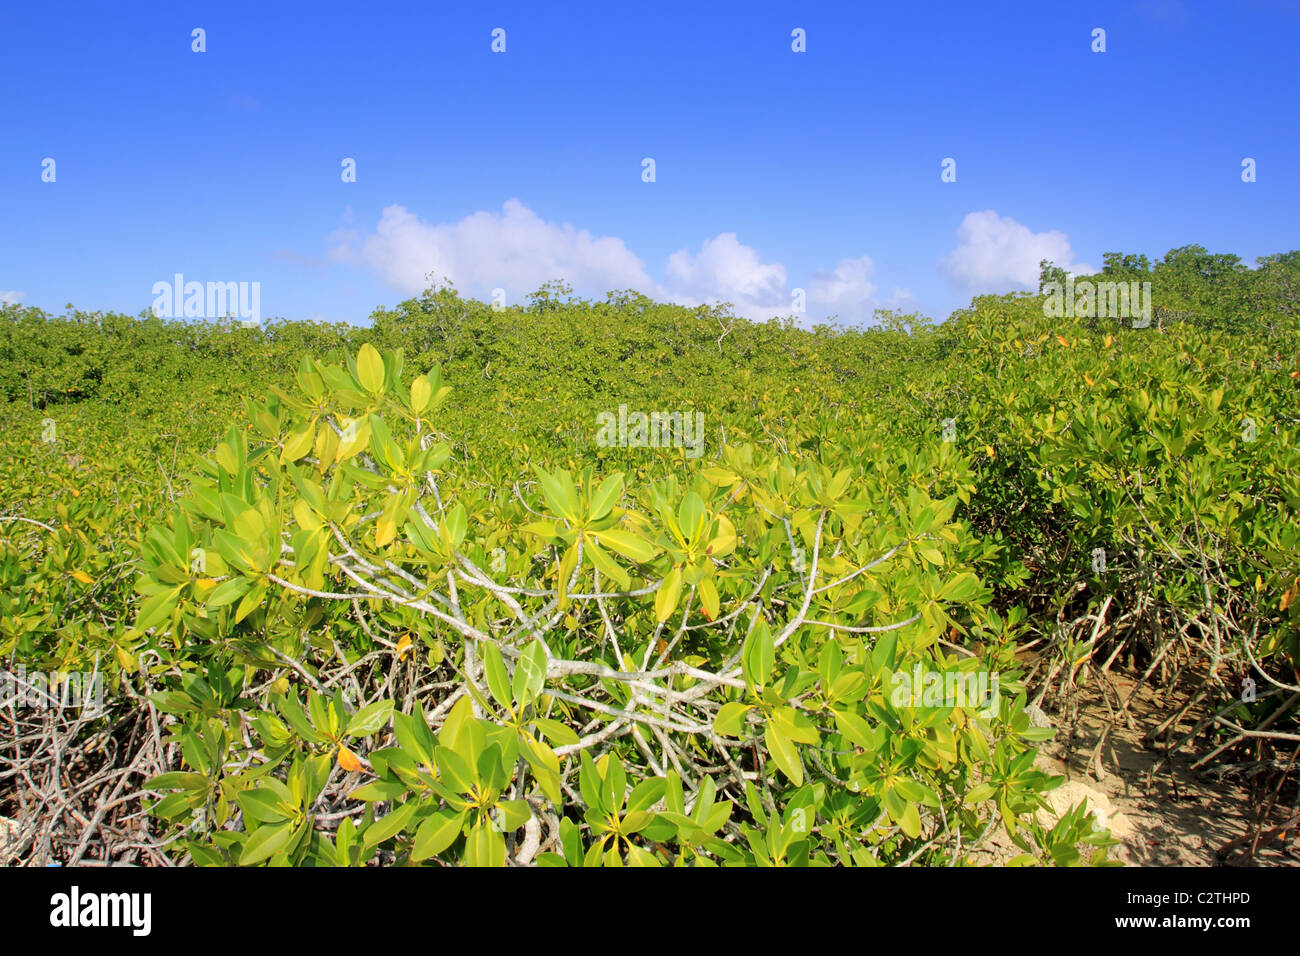 Détail de l'usine de mangrove en journée ensoleillée, ciel bleu Riviera Maya Mexique Banque D'Images